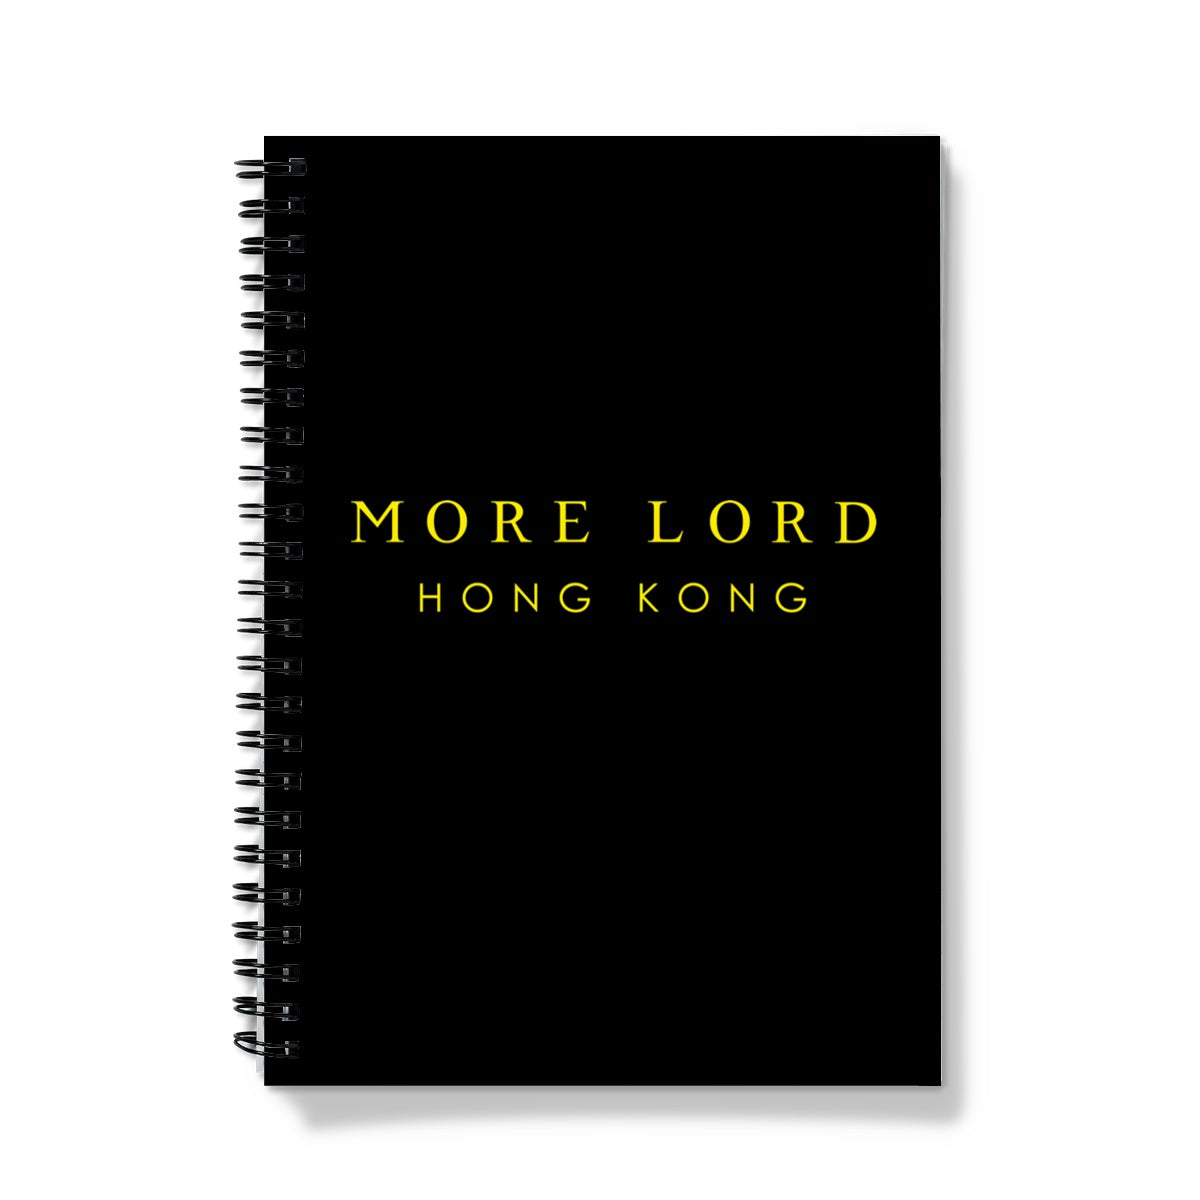 More Lord Hong Kong  Notebook